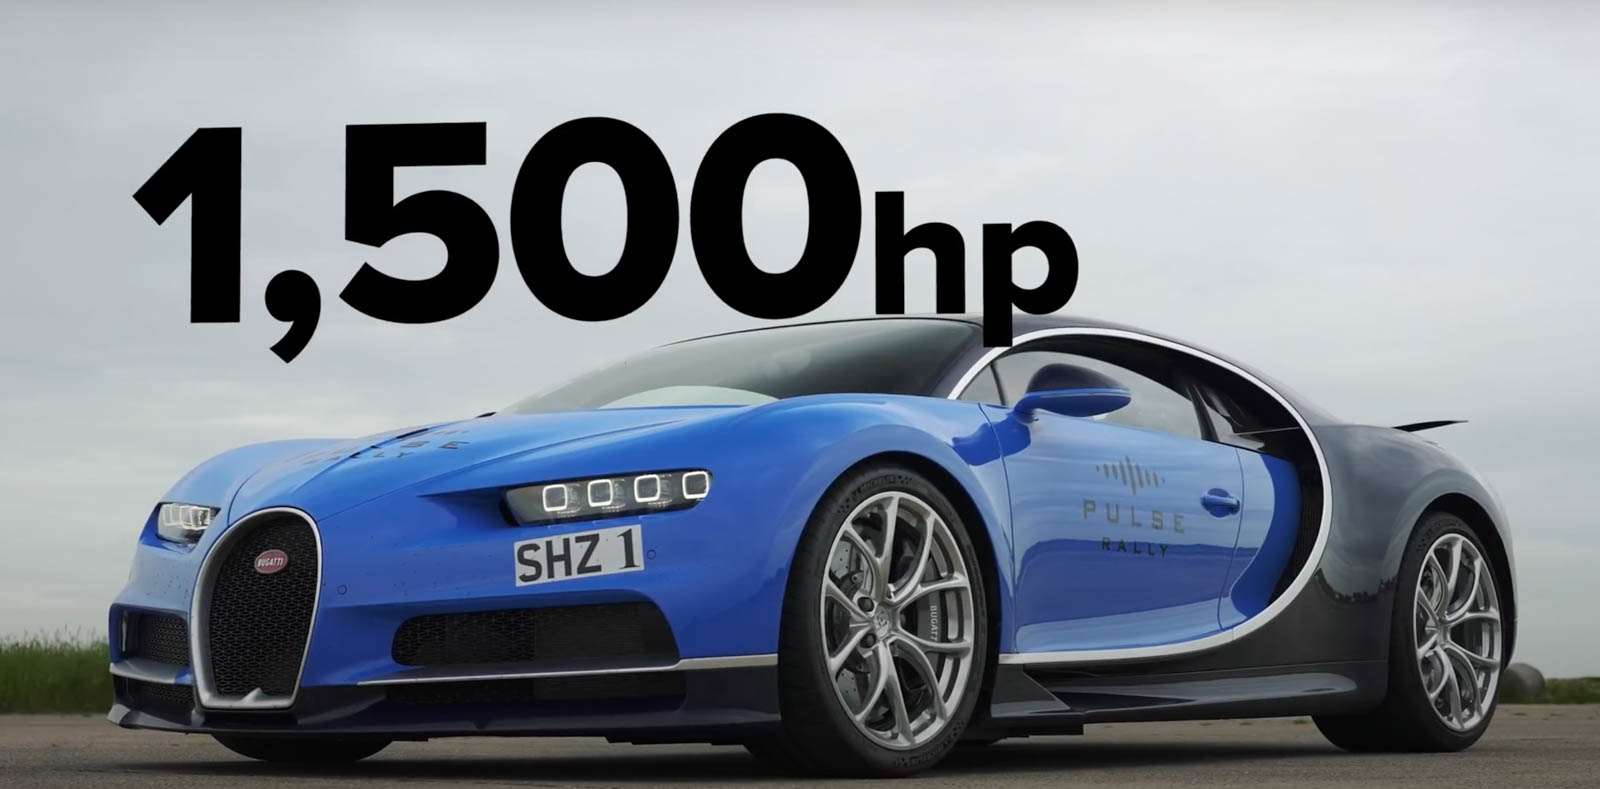 8000c.c.的W16渦輪增壓引擎，擁有1500匹的最大馬力，但車重也來到1,995公斤